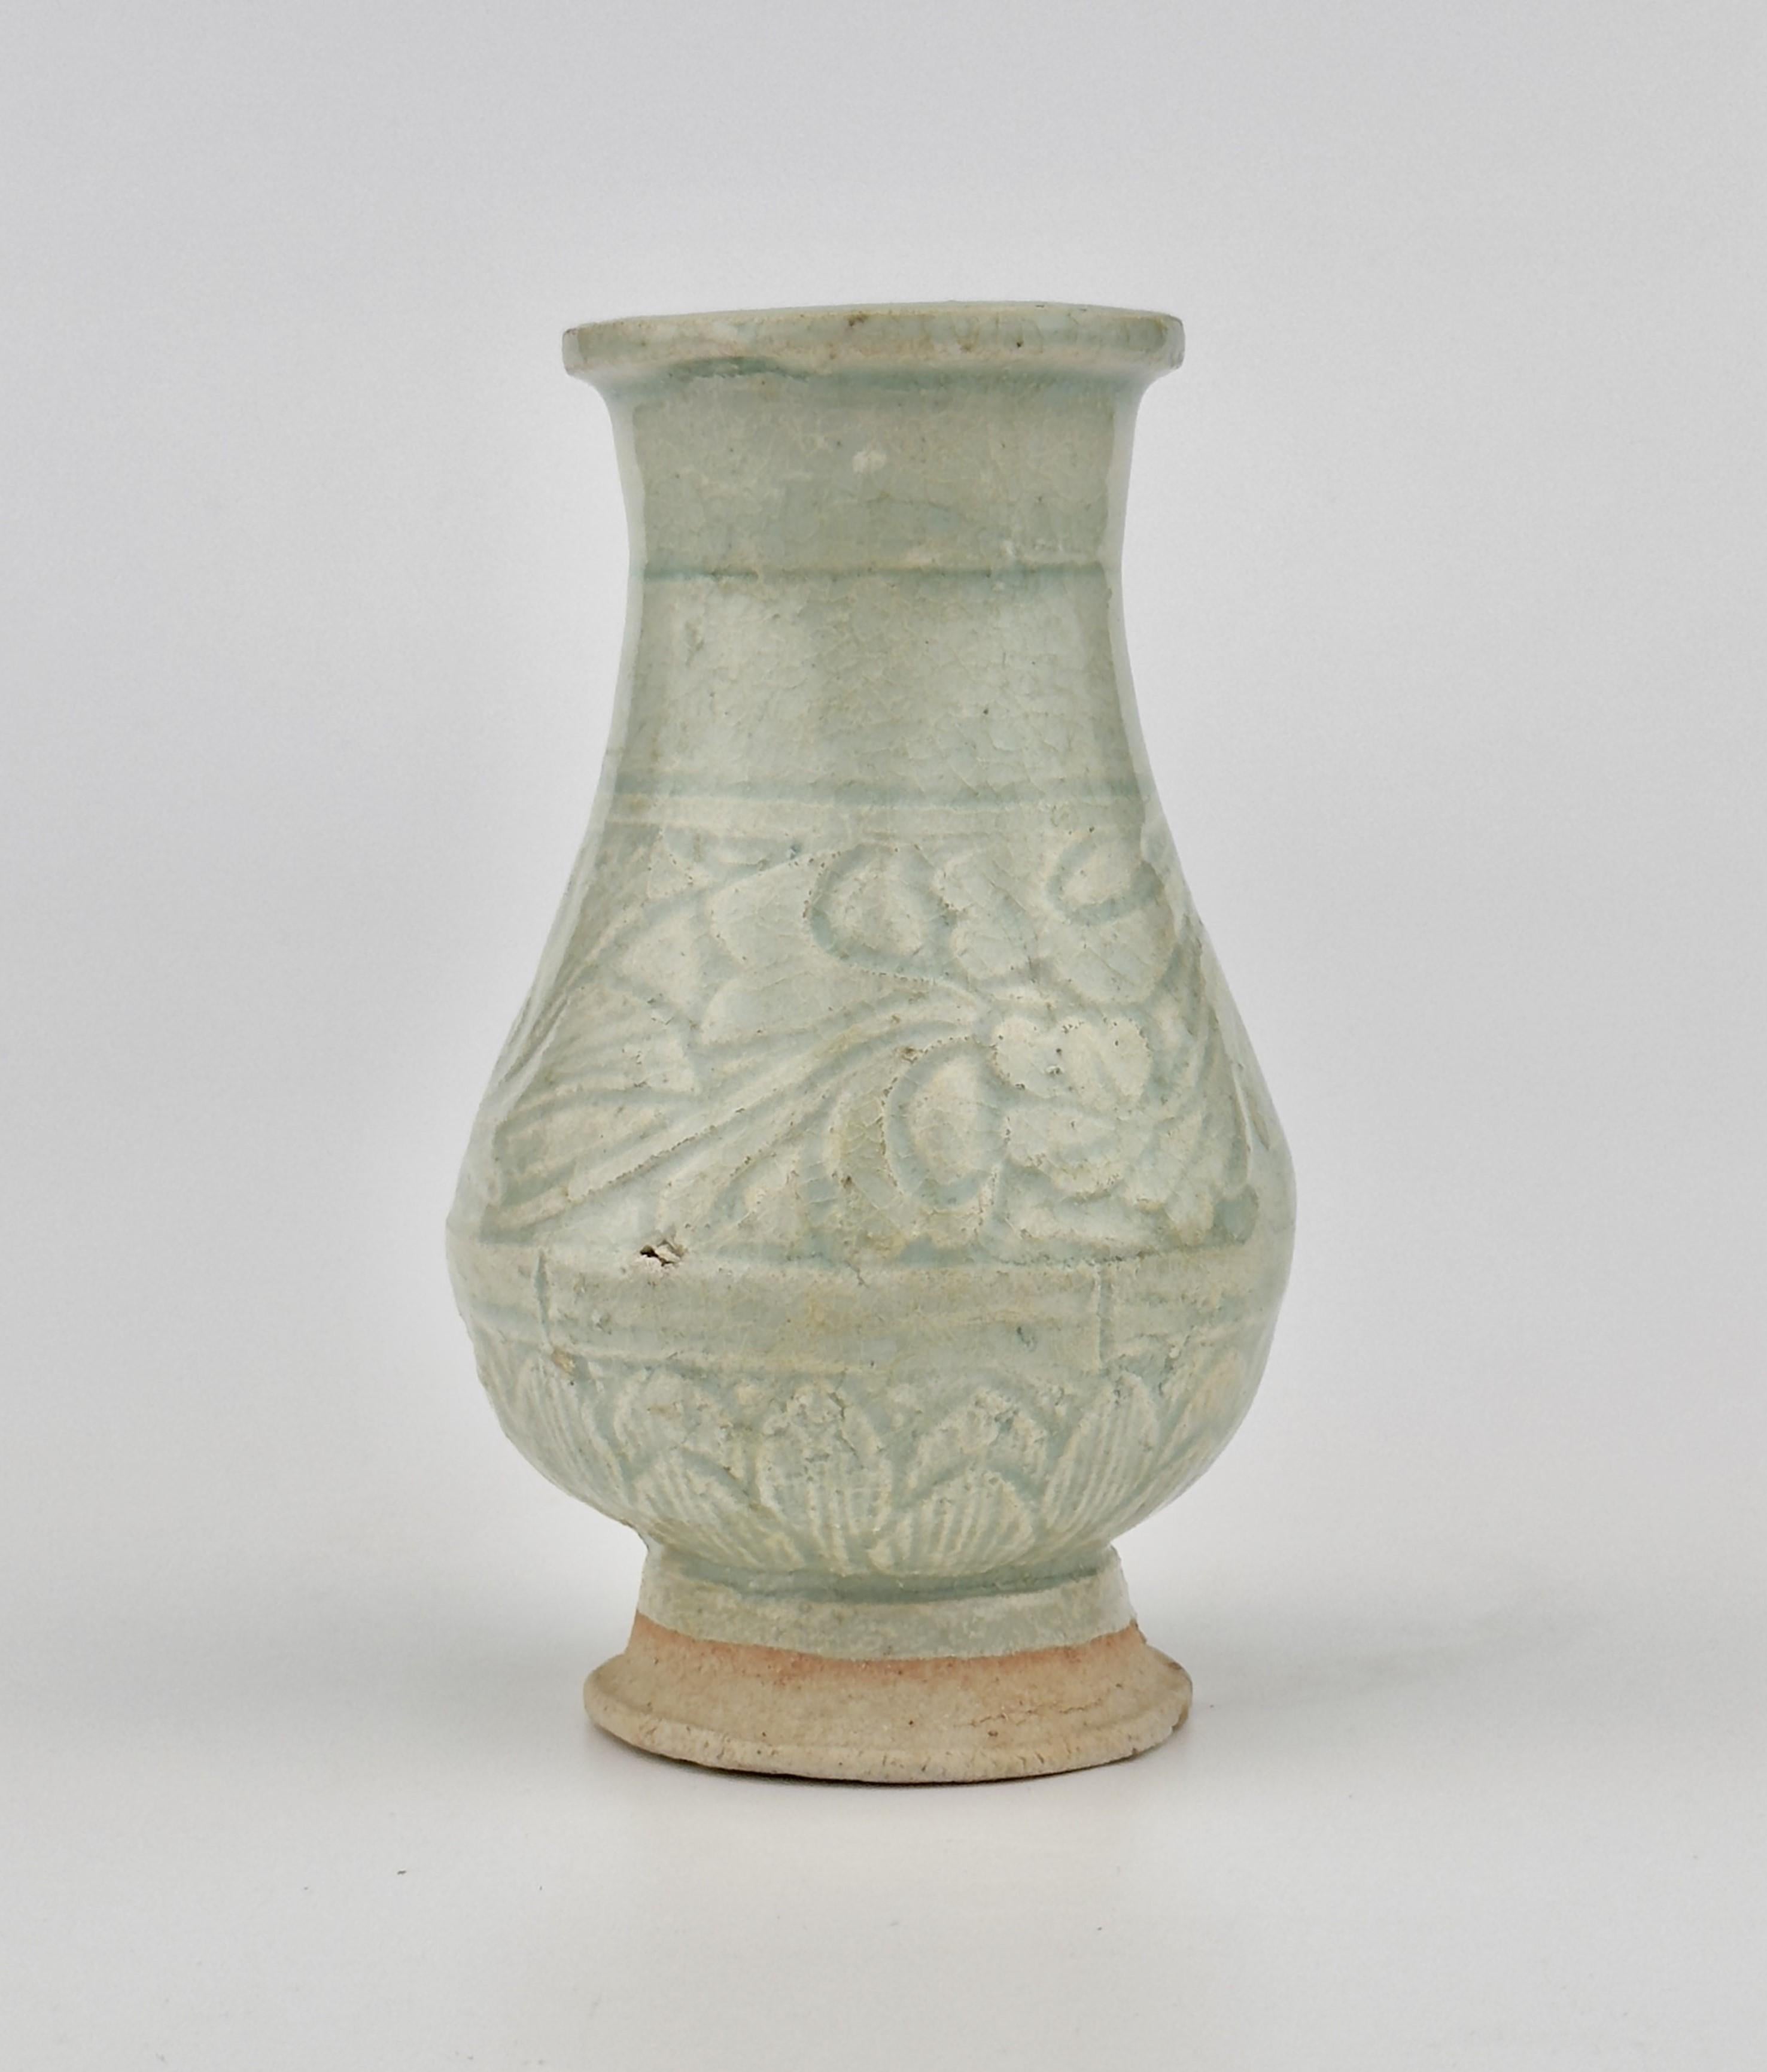 Ce vase est fabriqué à partir d'un type d'argile poreuse faiblement cuite et présente une glaçure craquelée. Il s'apparente aux célèbres vases et couvercles funéraires ornés de décorations appliquées.

Période : Dynastie Yuan (1271-1368)
Type : Vase